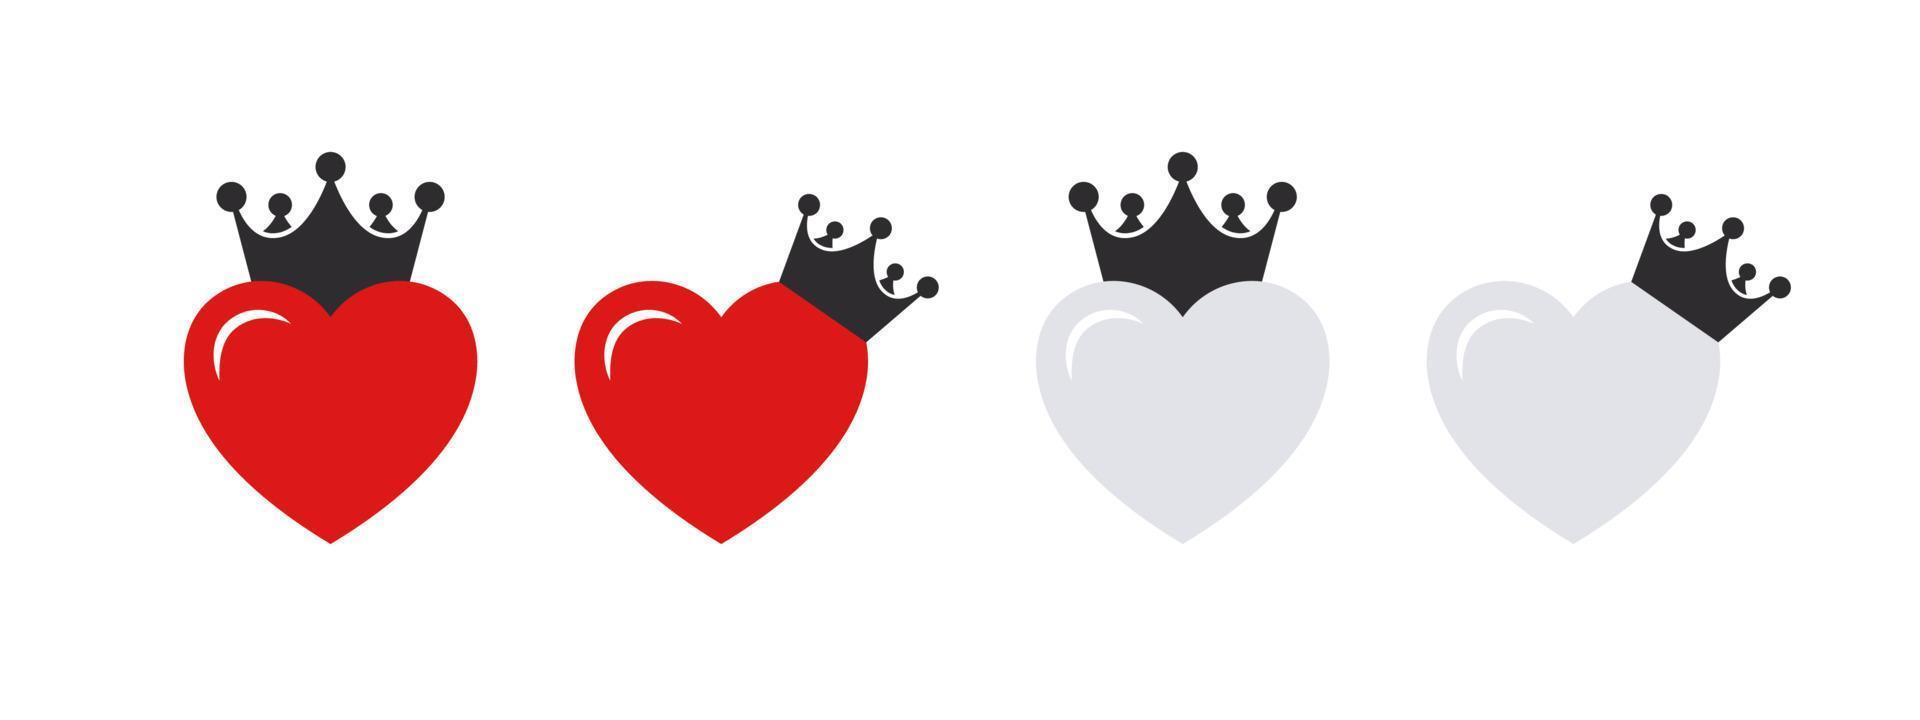 hart pictogrammen met kronen. symbolen van liefde. emoticons harten. vector afbeeldingen